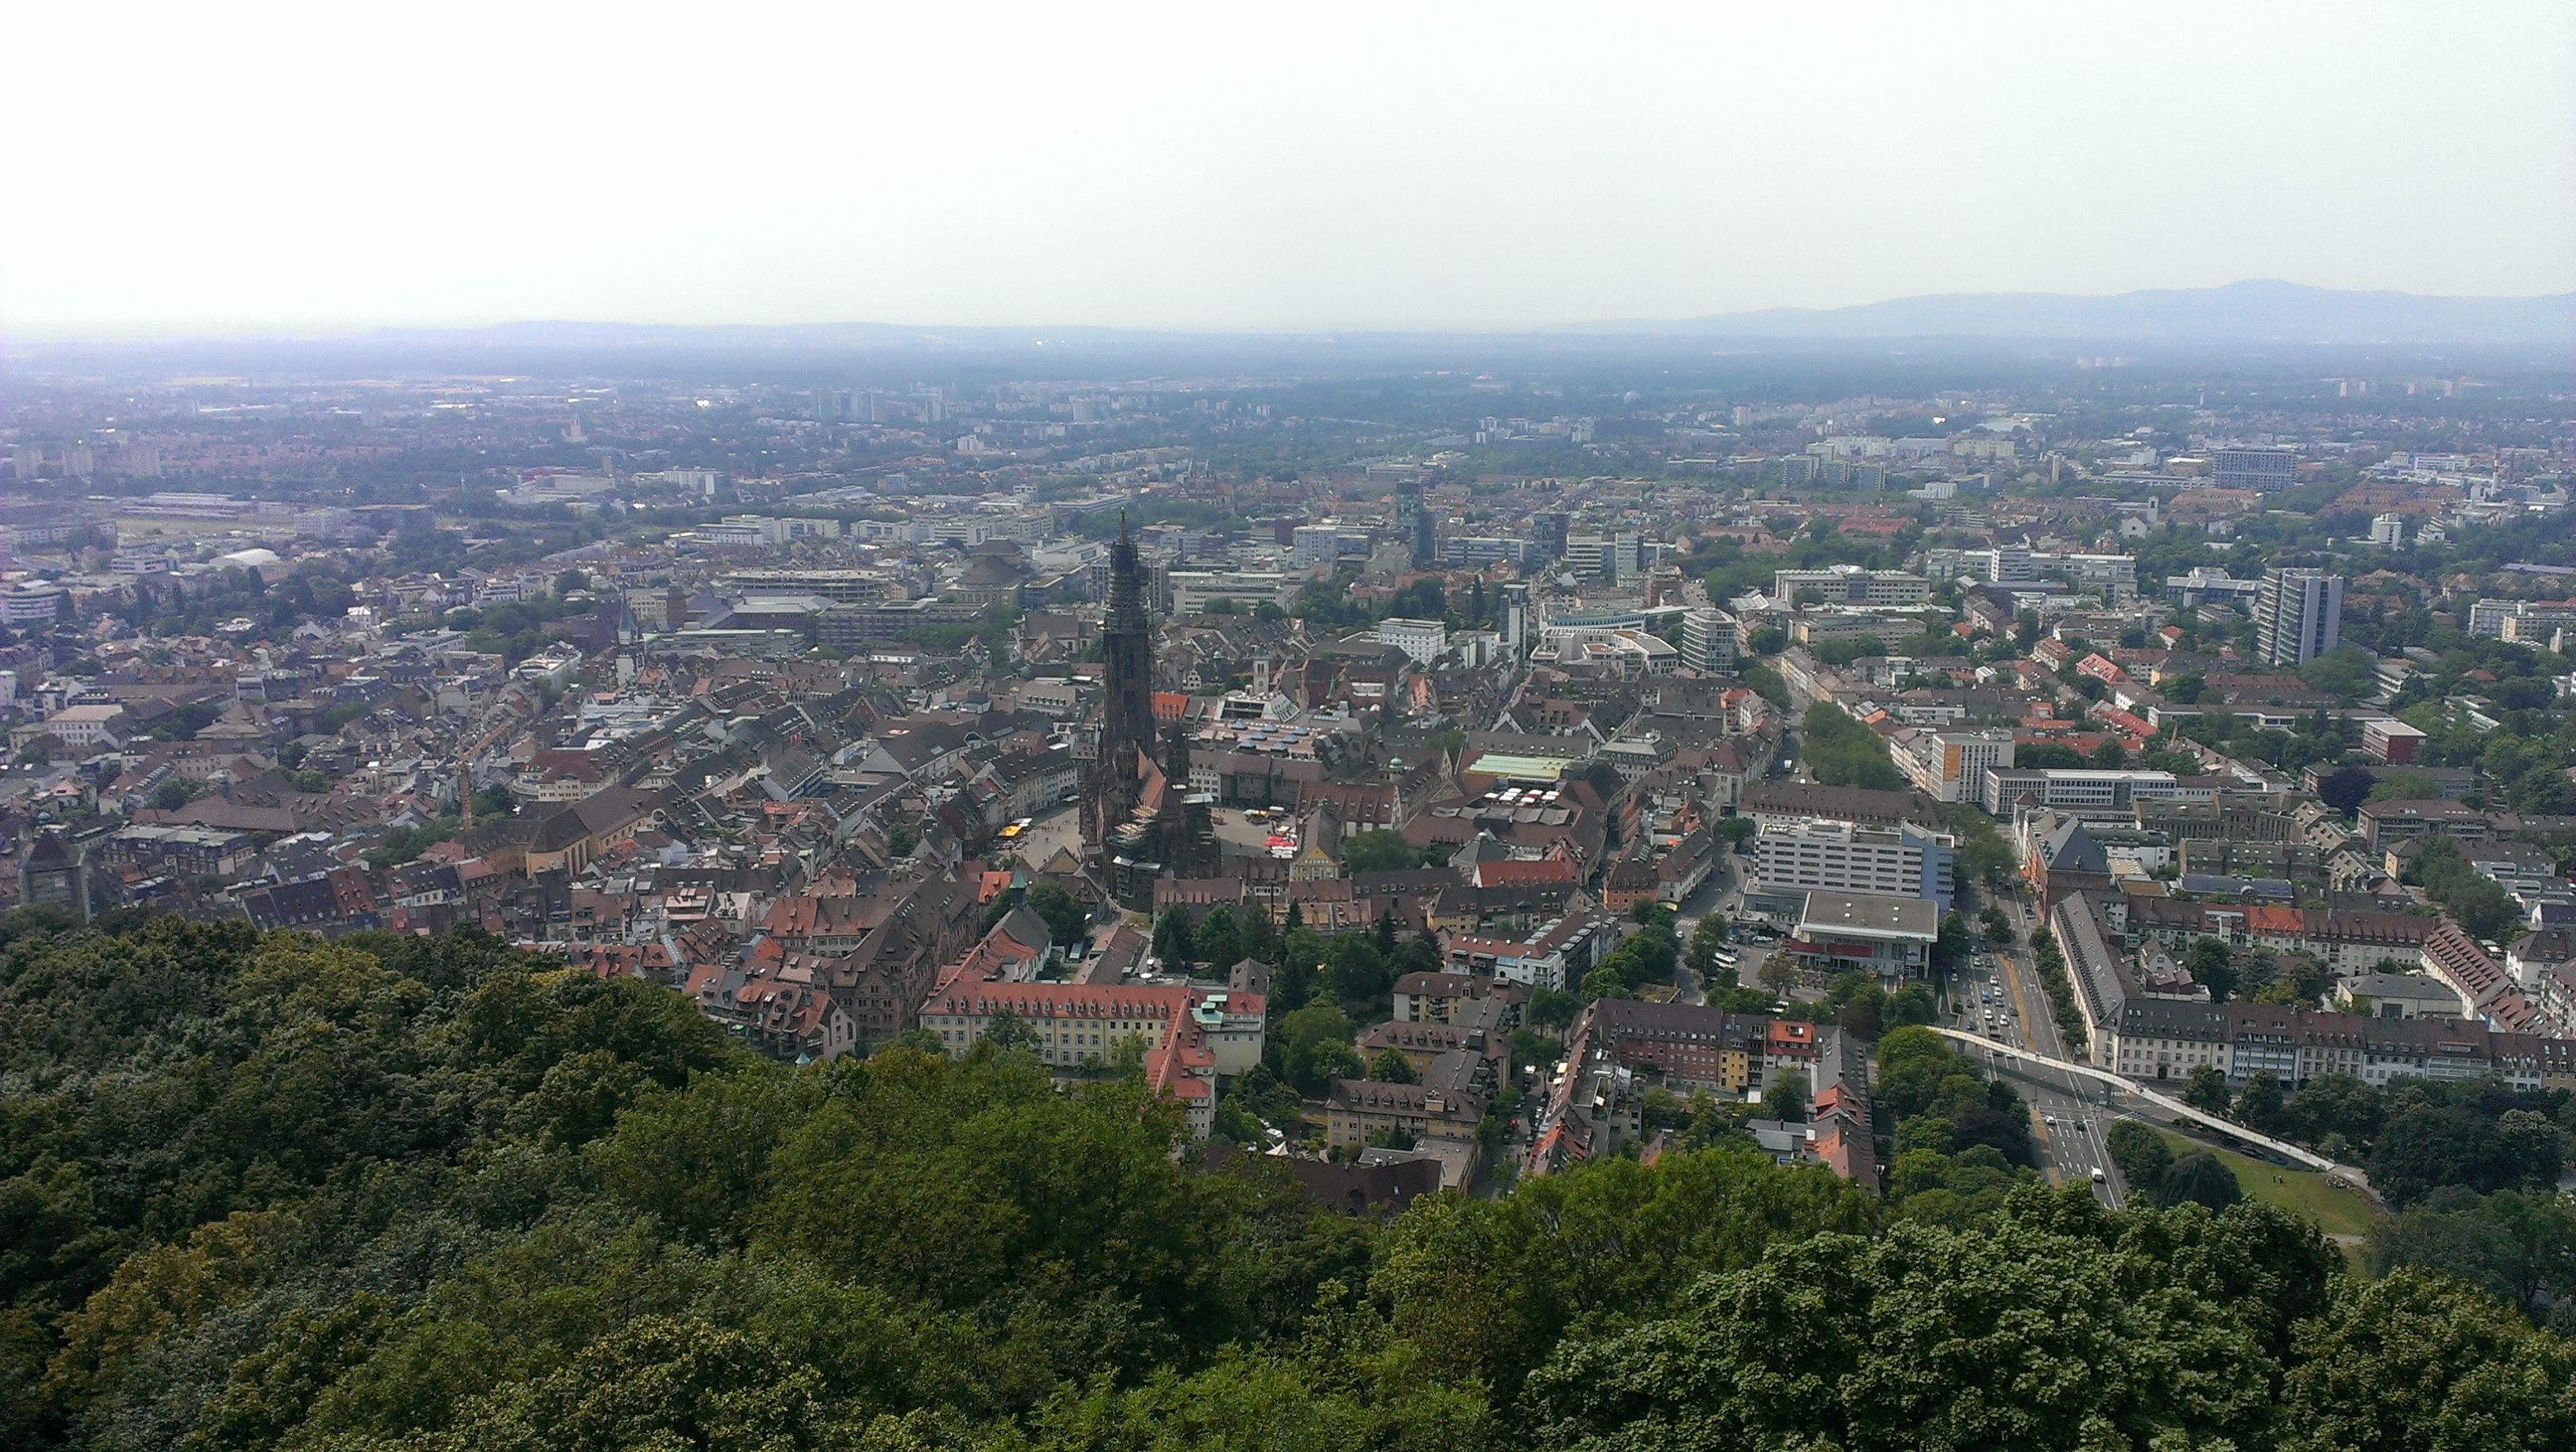 Aerial view of a European town